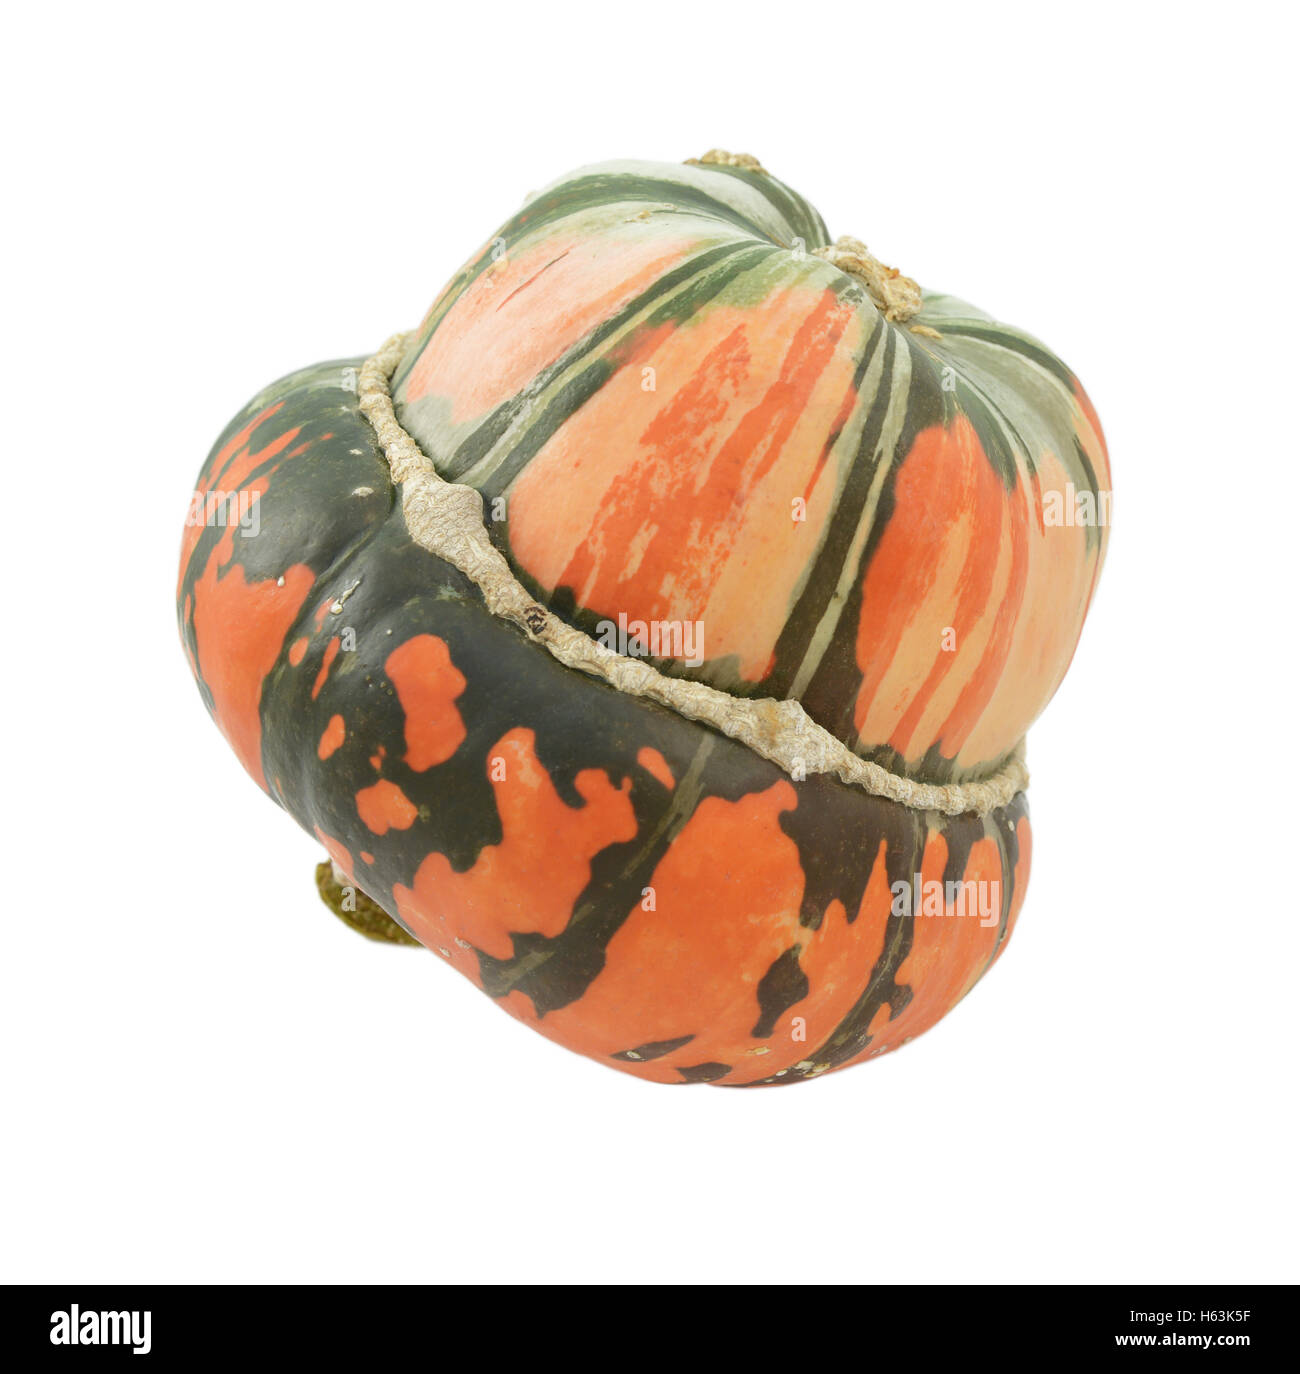 Rayé vert et orange squash Turban de profil, isolé sur fond blanc Banque D'Images